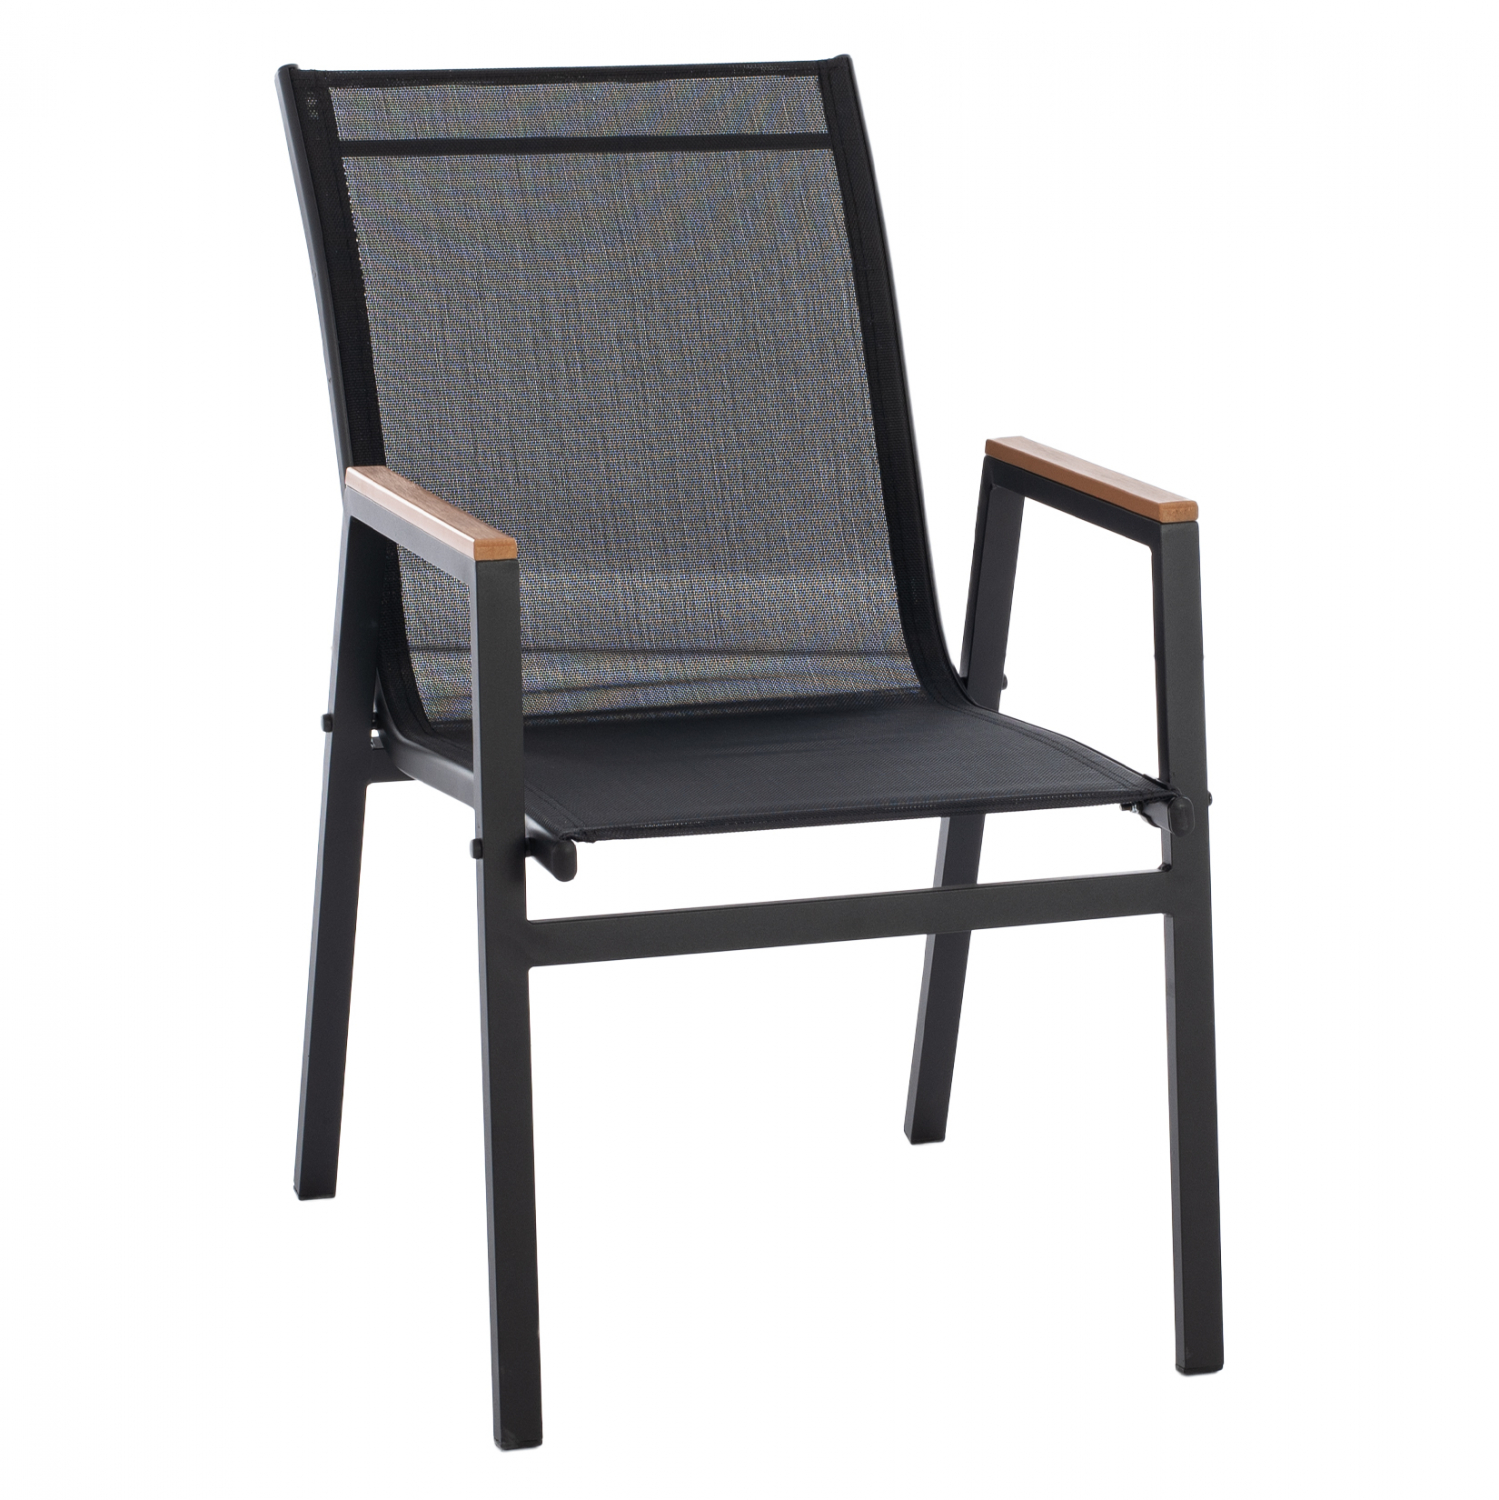 Πολυθρόνα από αλουμίνιο/textilene σε μαύρο χρώμα 53x67x86